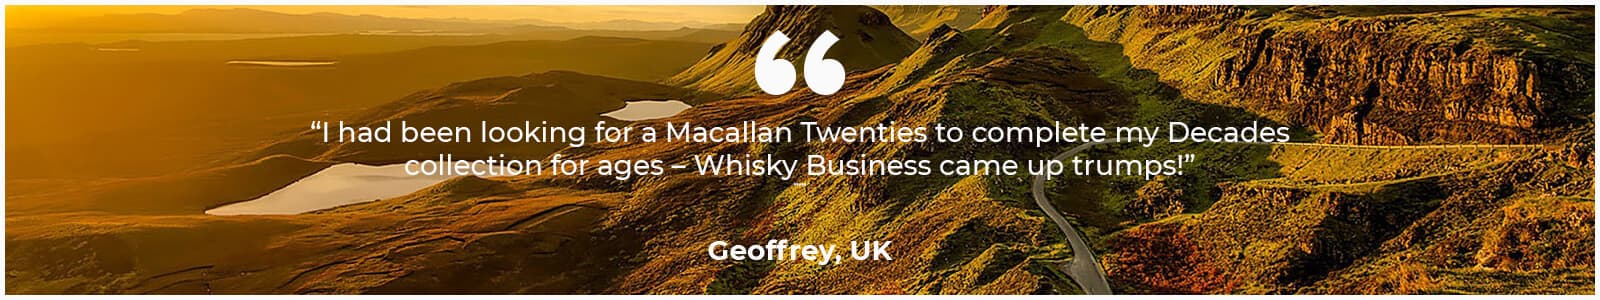 Customer testimonial for Whisky Business